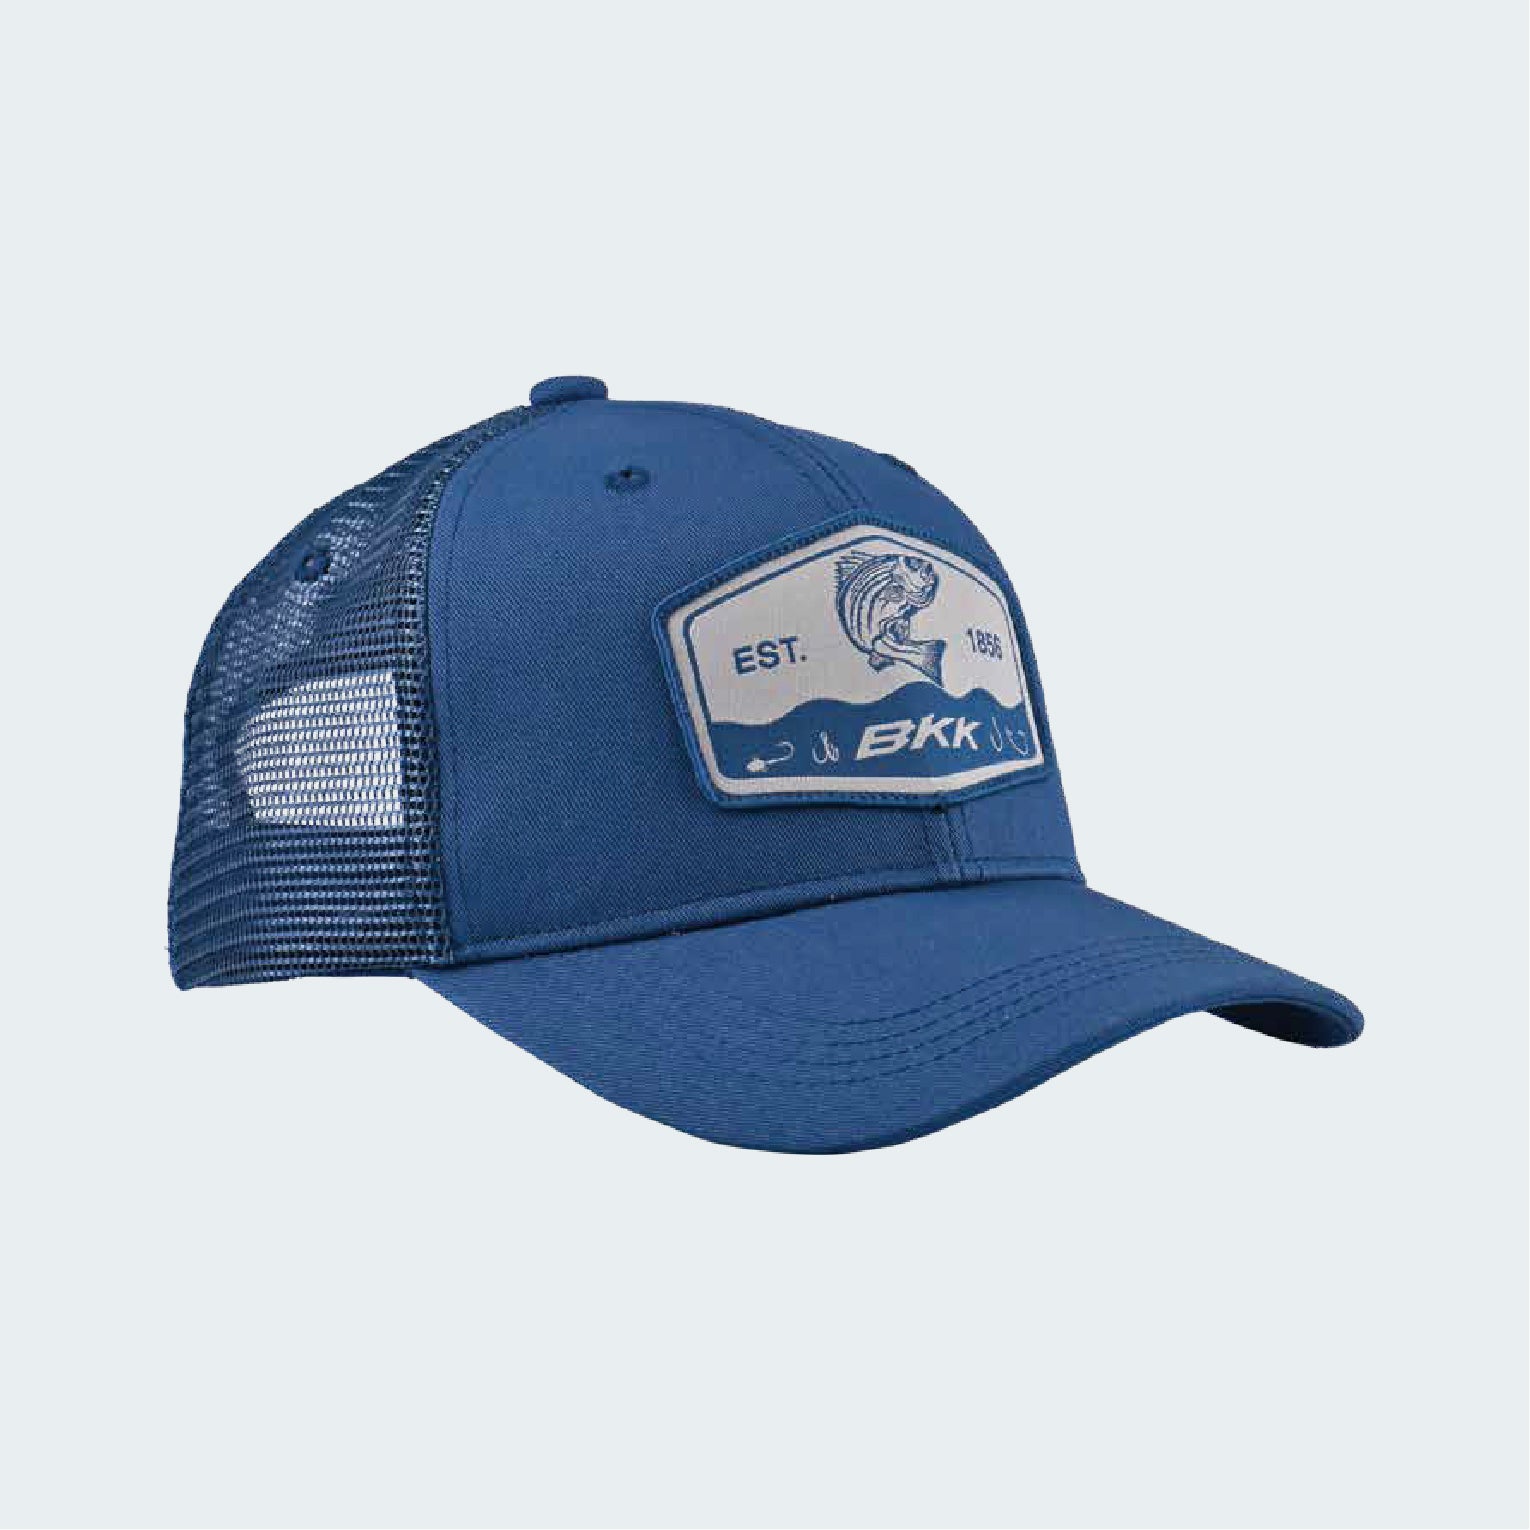 Grundens Gaff Trucker 312 Hat - Clothing